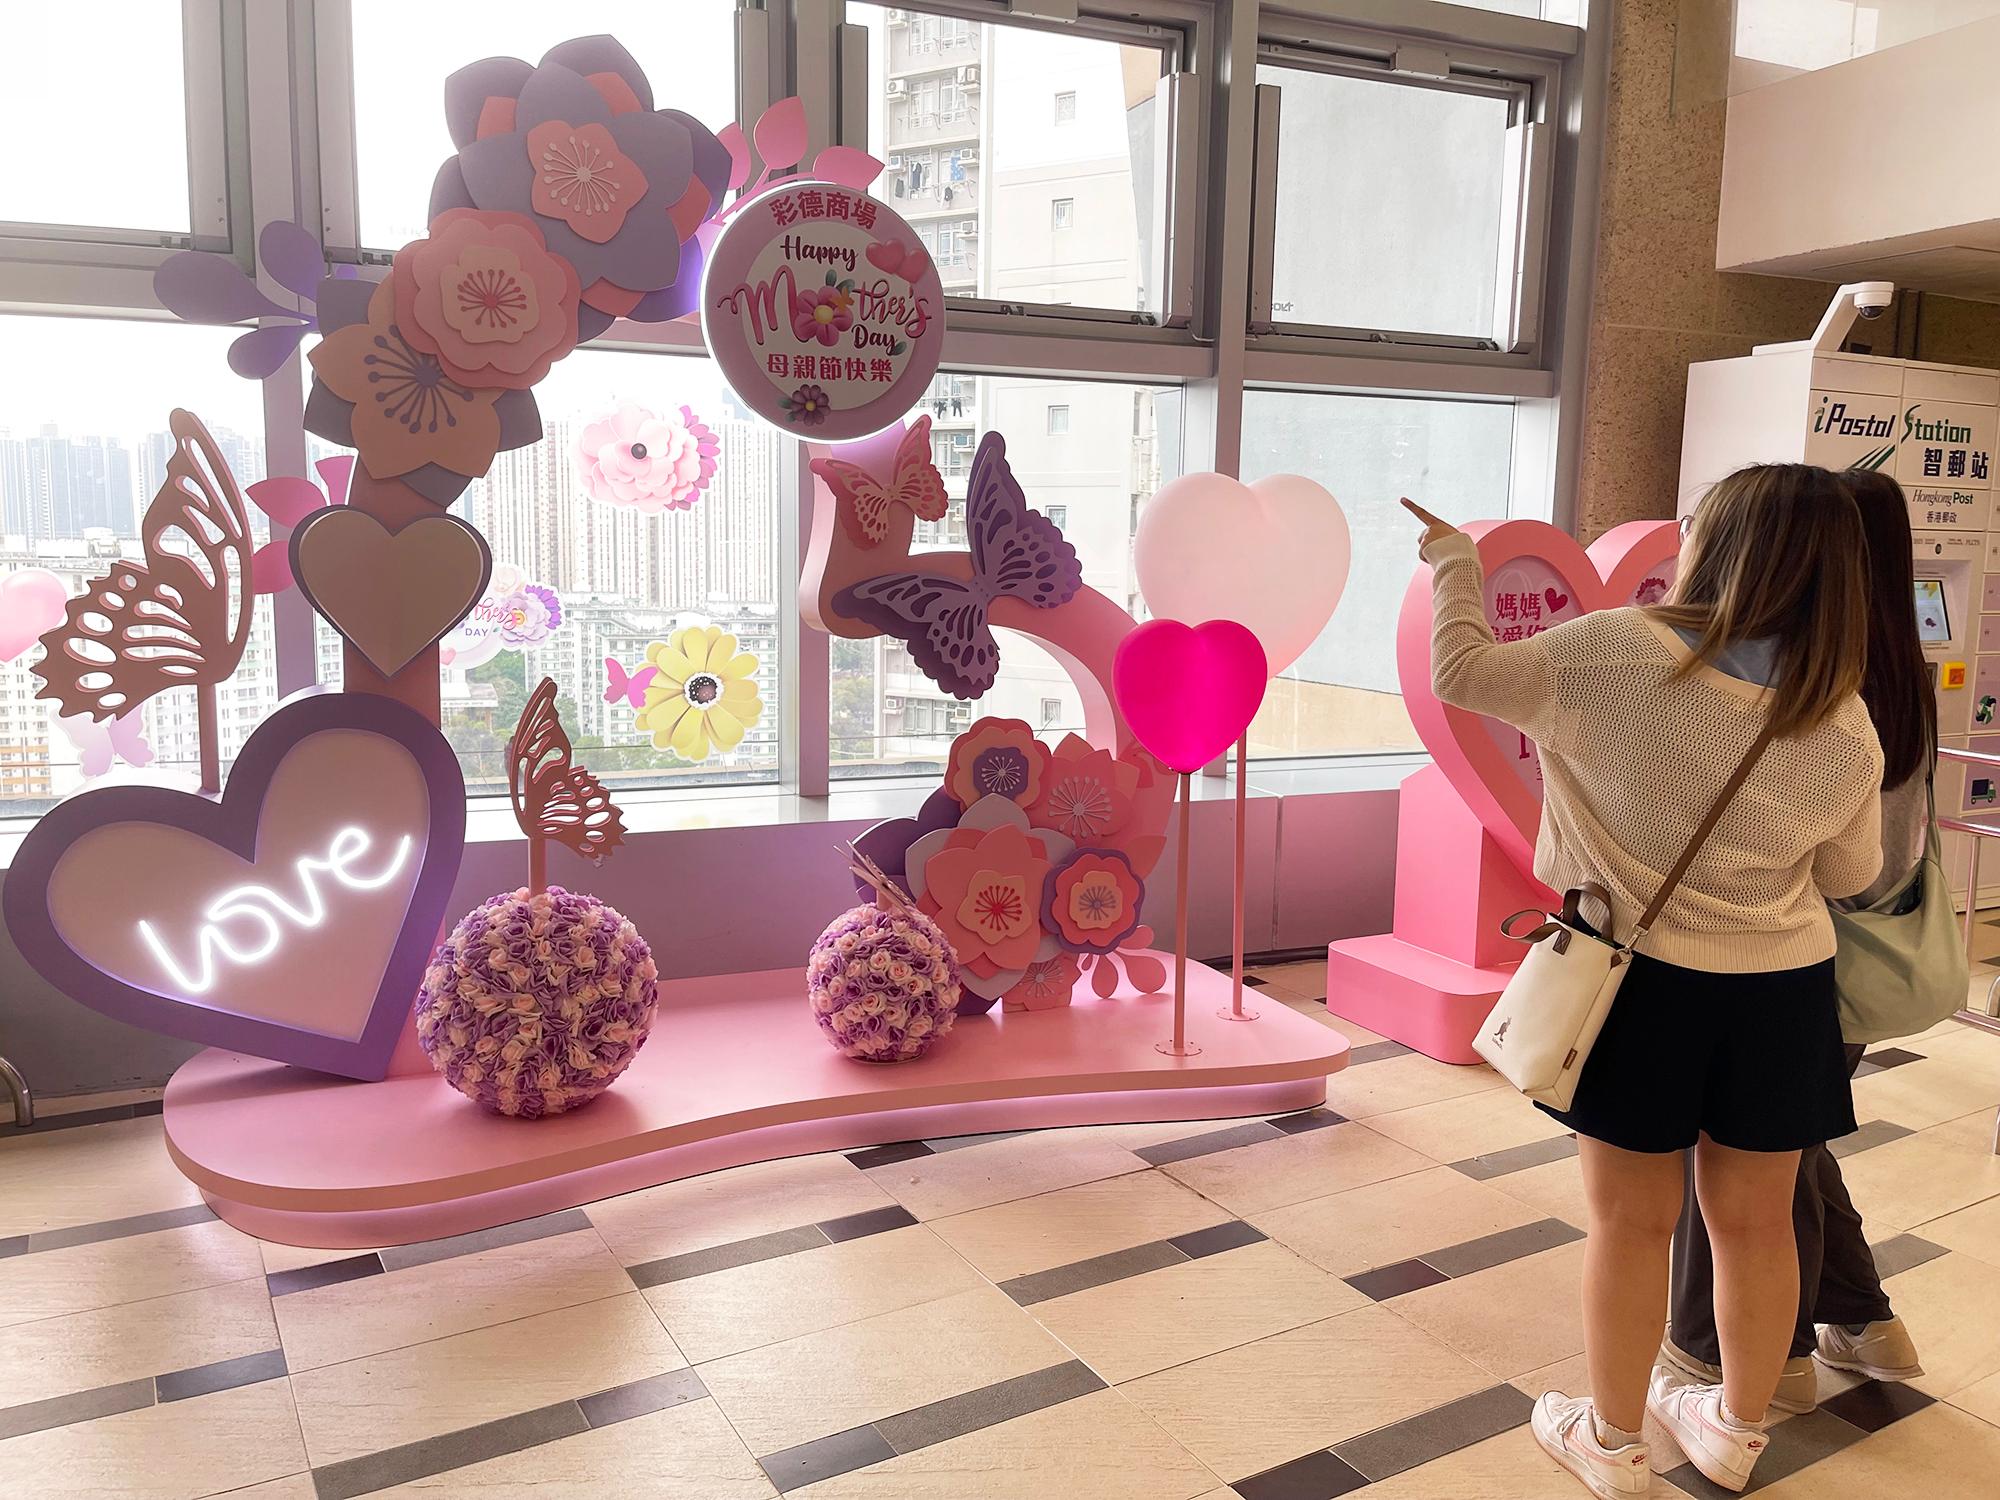 香港房屋委員會（房委會）於母親節期間在轄下多個商場舉辦推廣活動，以歌頌母愛和增加商場人流。圖示房委會觀塘彩德商場的母親節擺設。